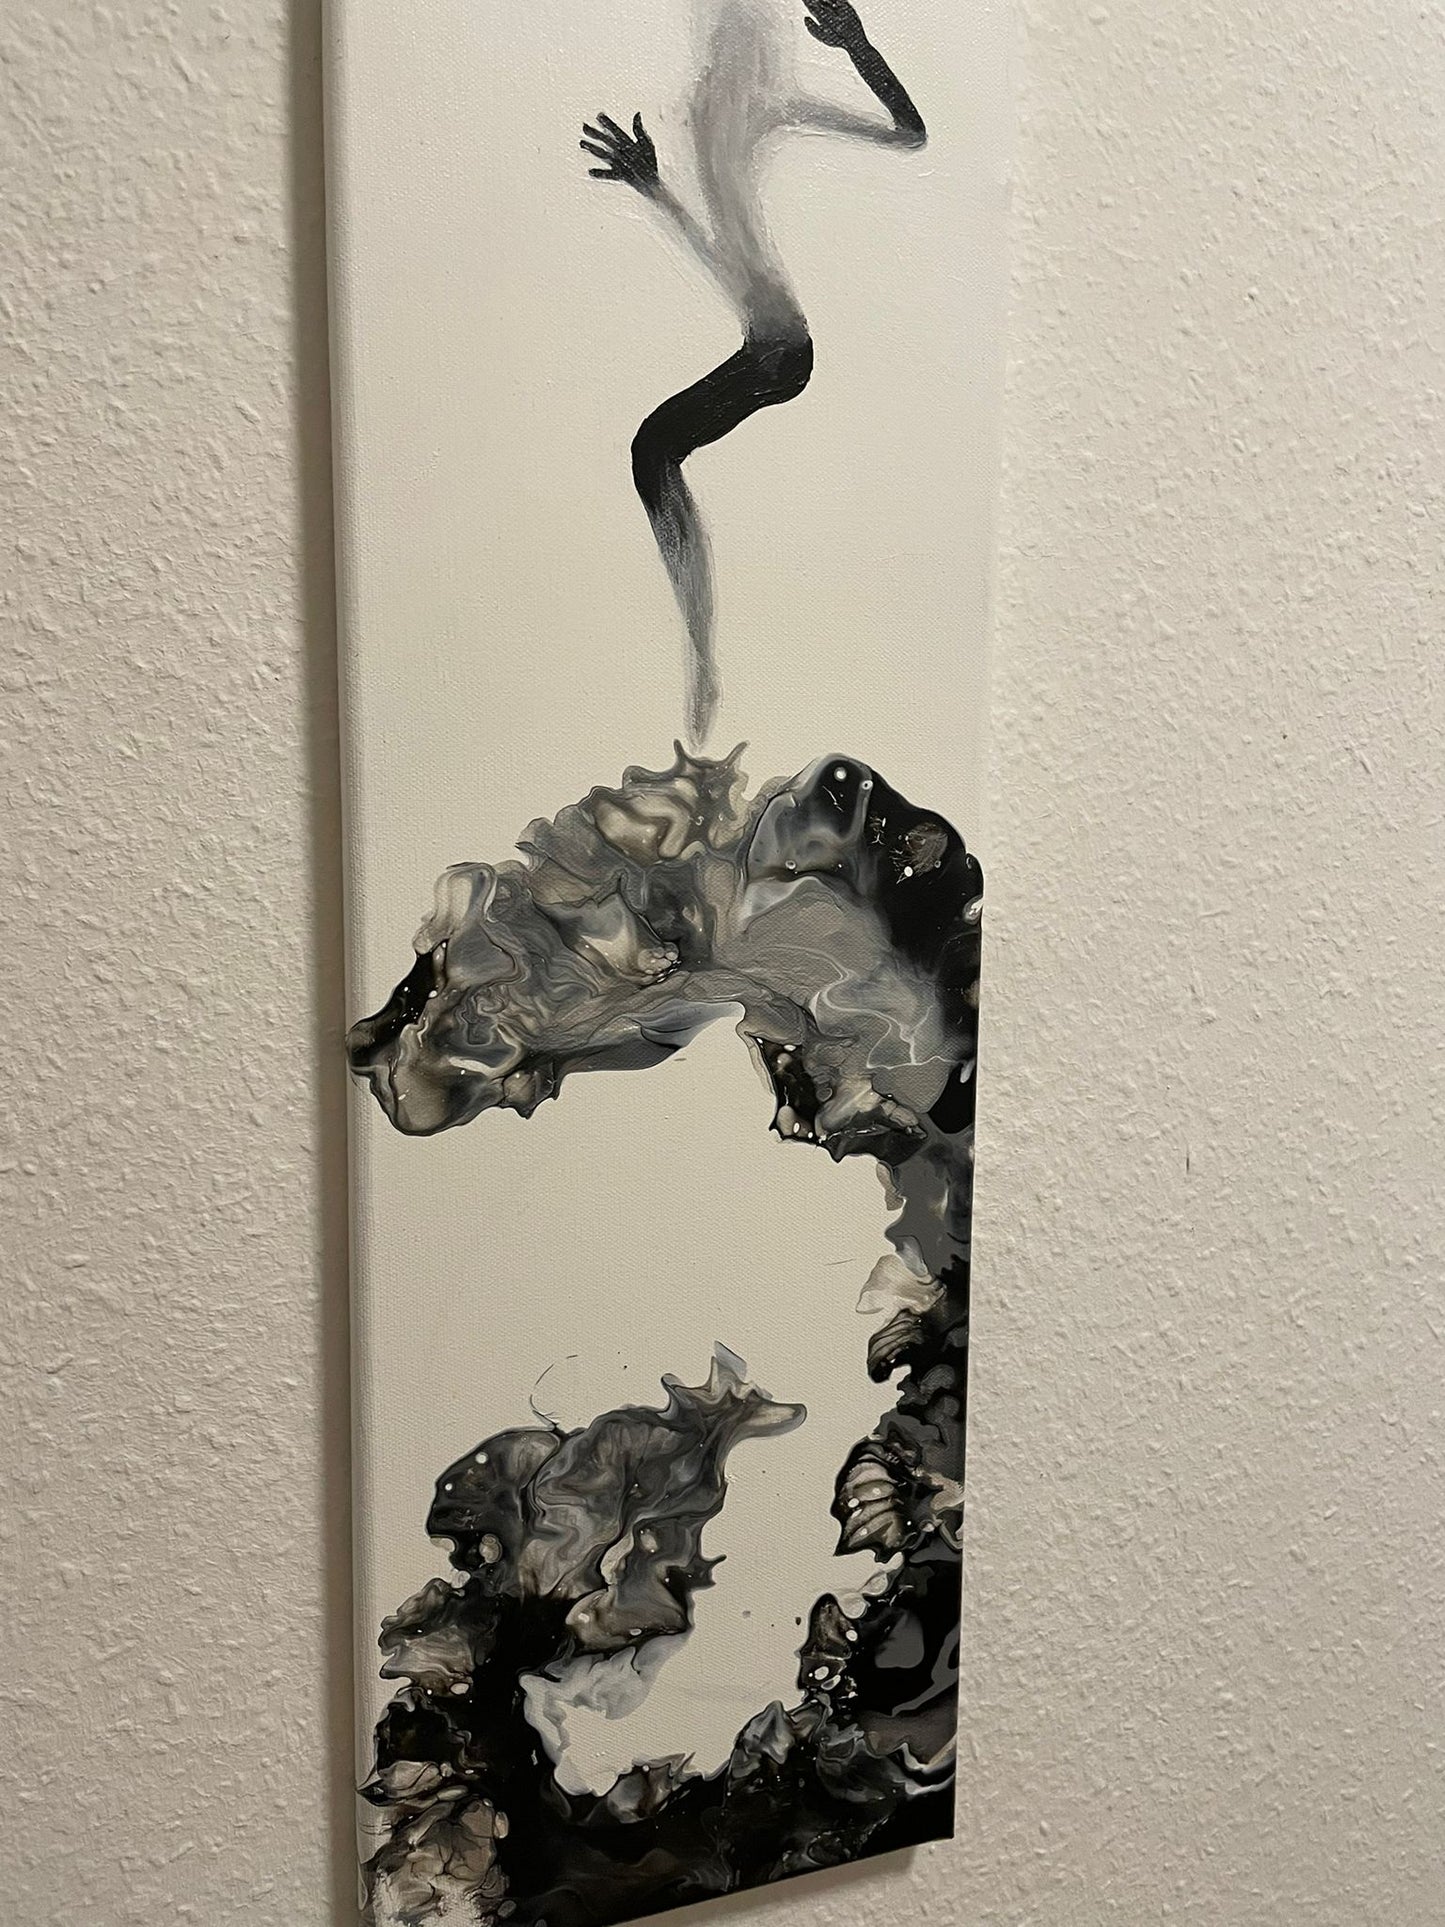 Outbreak Acrylbild Pouring Frau schwarz weiß